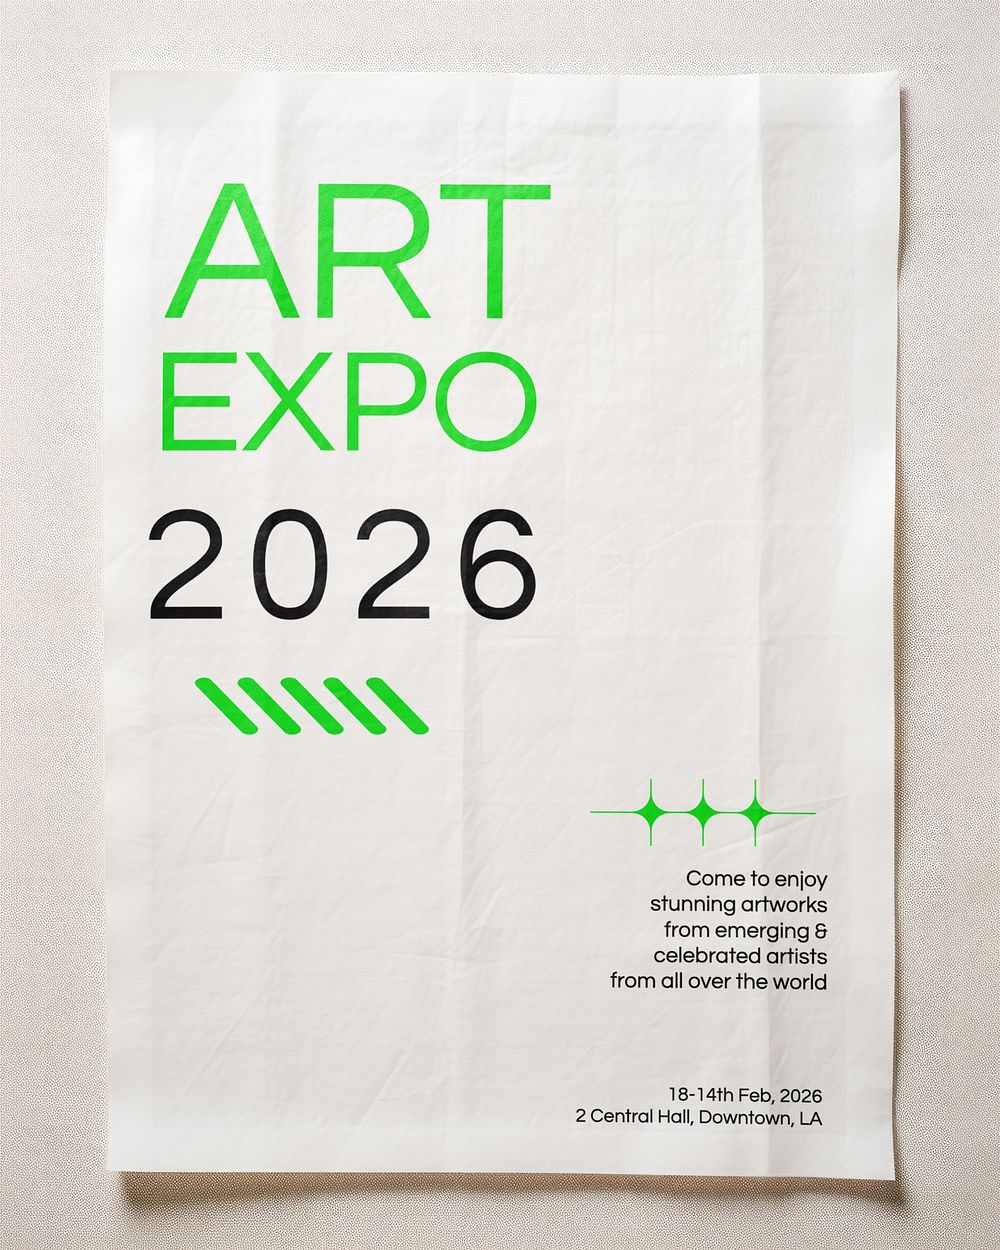 Wrinkled art expo poster